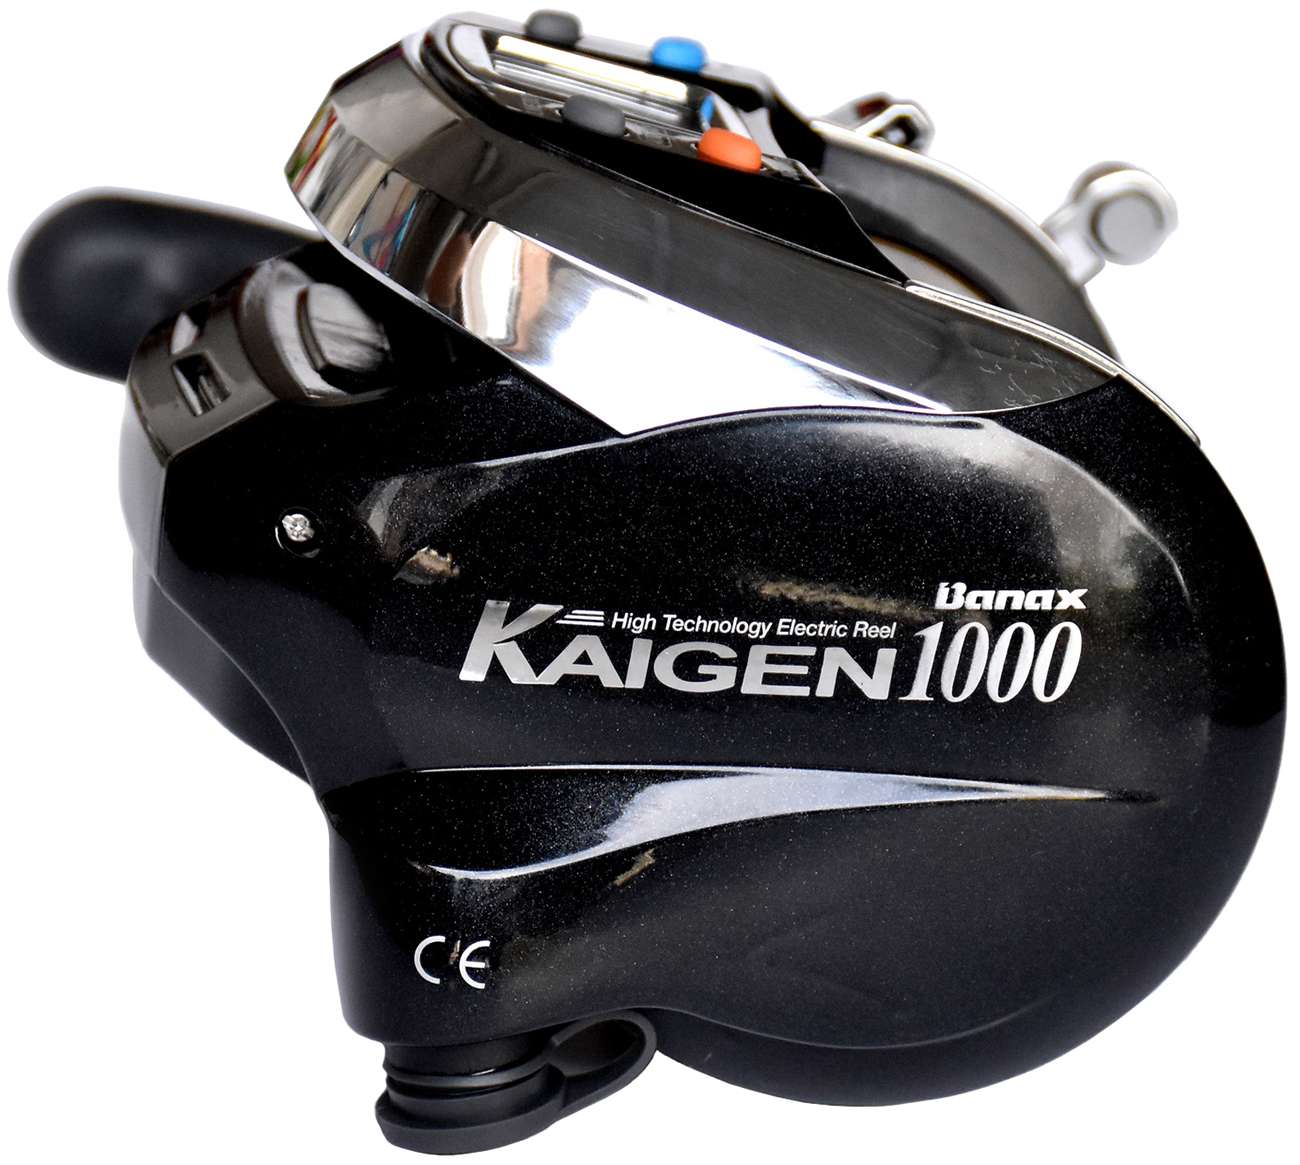 Banax Kaigen 1000 Electric Reel